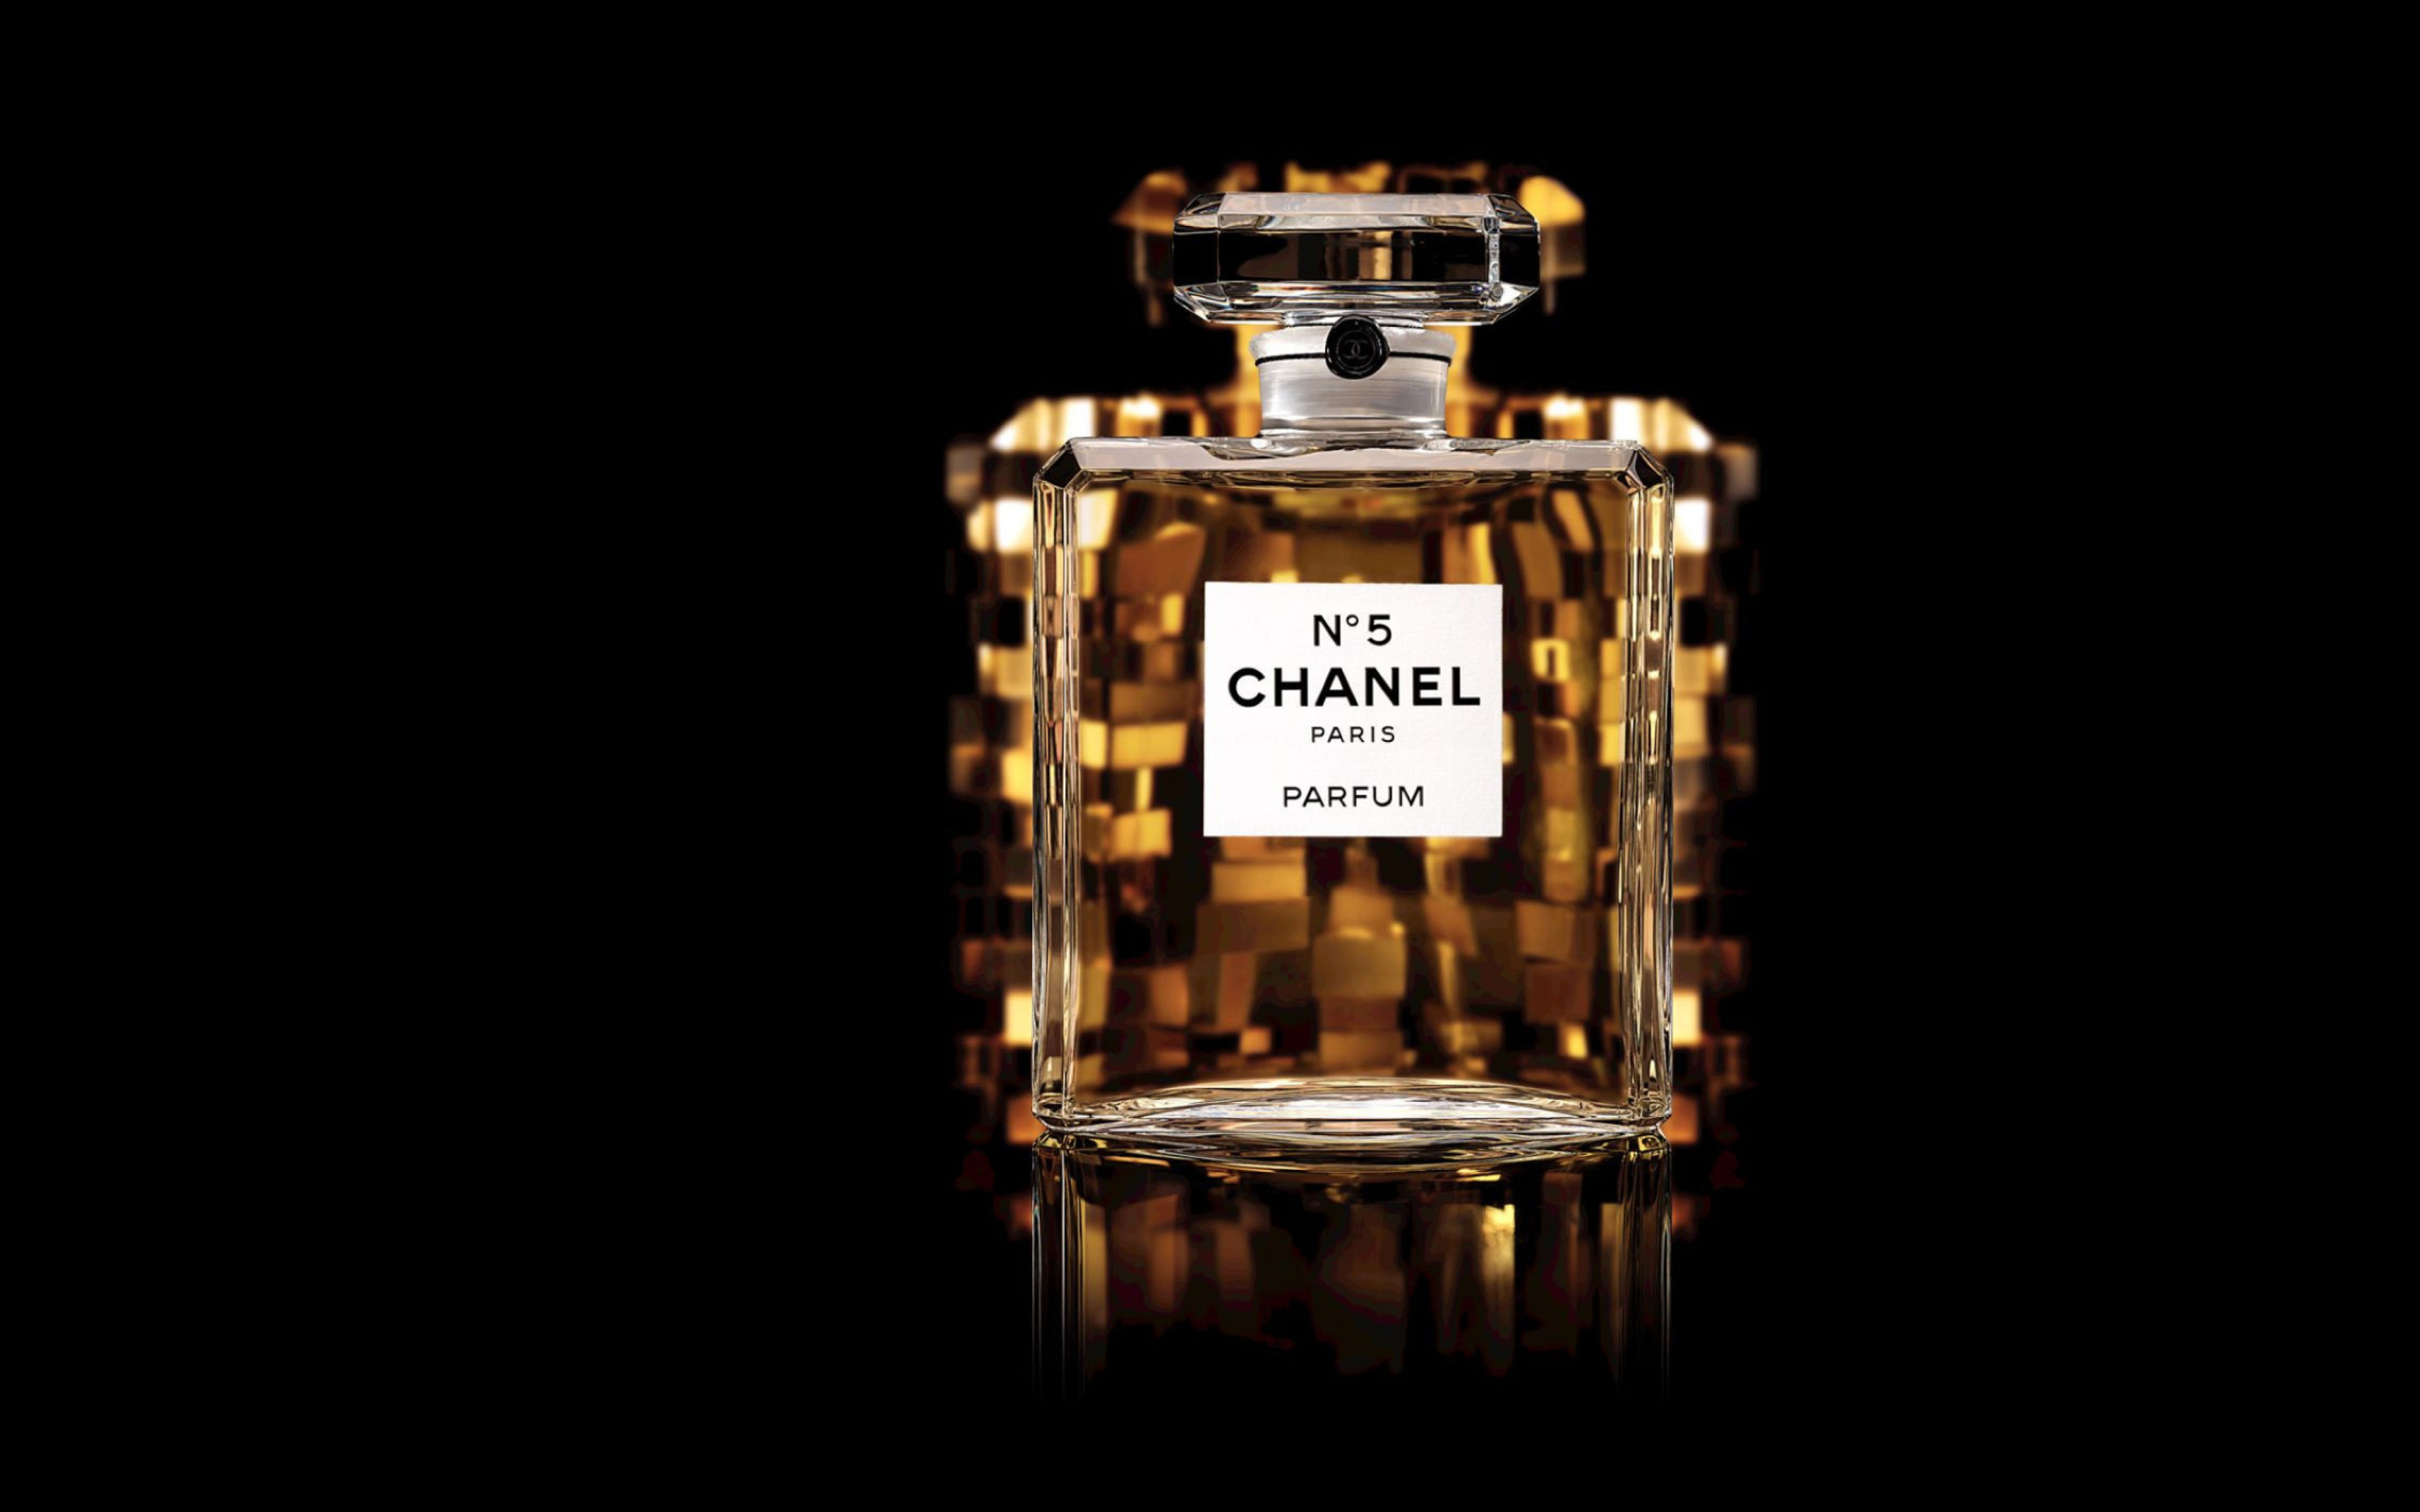 Обои Chanel 5 Fragrance Perfume 2560x1600